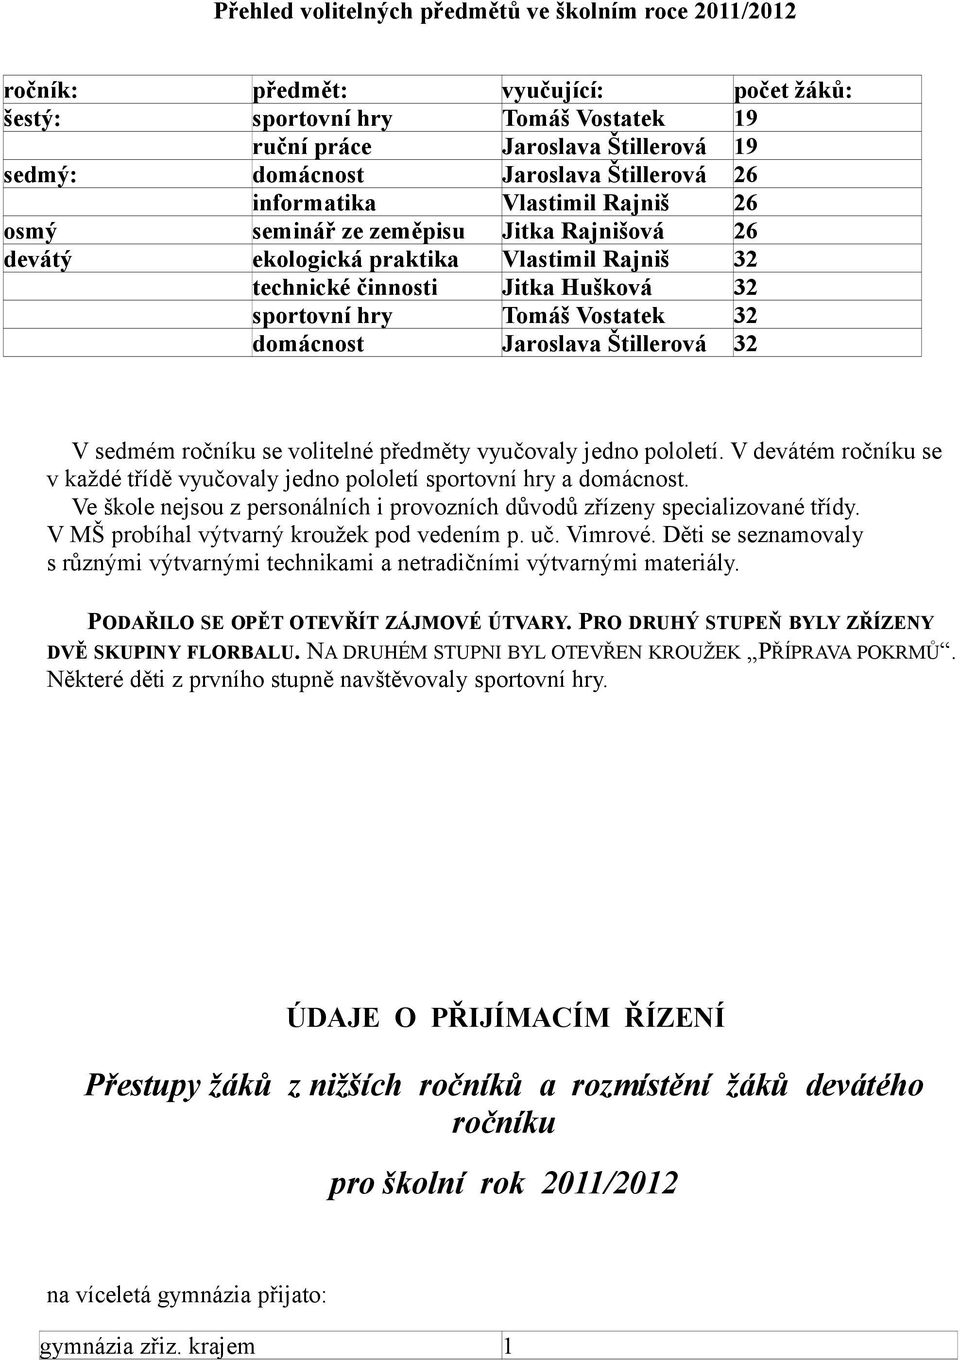 Vostatek 32 domácnost Jaroslava Štillerová 32 V sedmém ročníku se volitelné předměty vyučovaly jedno pololetí. V devátém ročníku se v každé třídě vyučovaly jedno pololetí sportovní hry a domácnost.